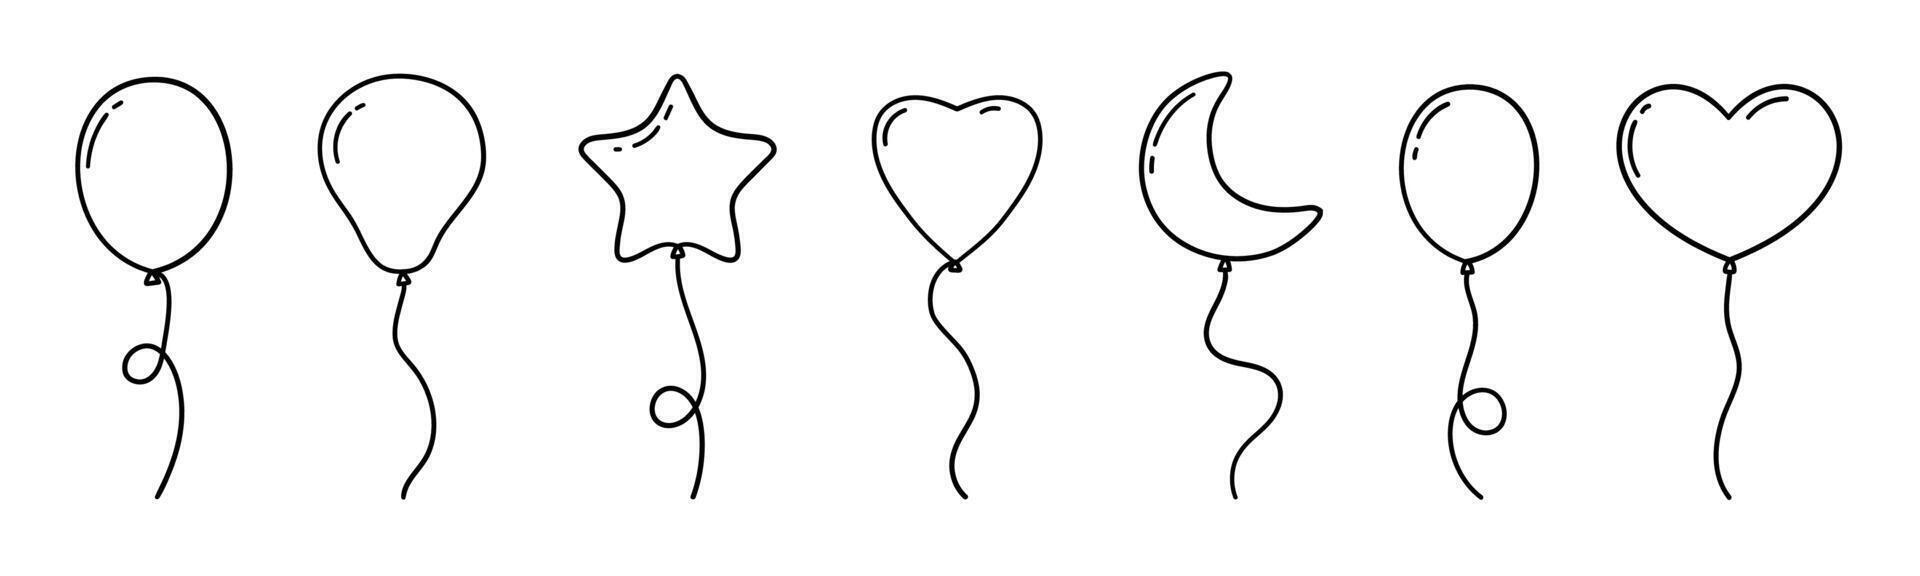 vektor teckning av varm luft ballonger i klotter stil